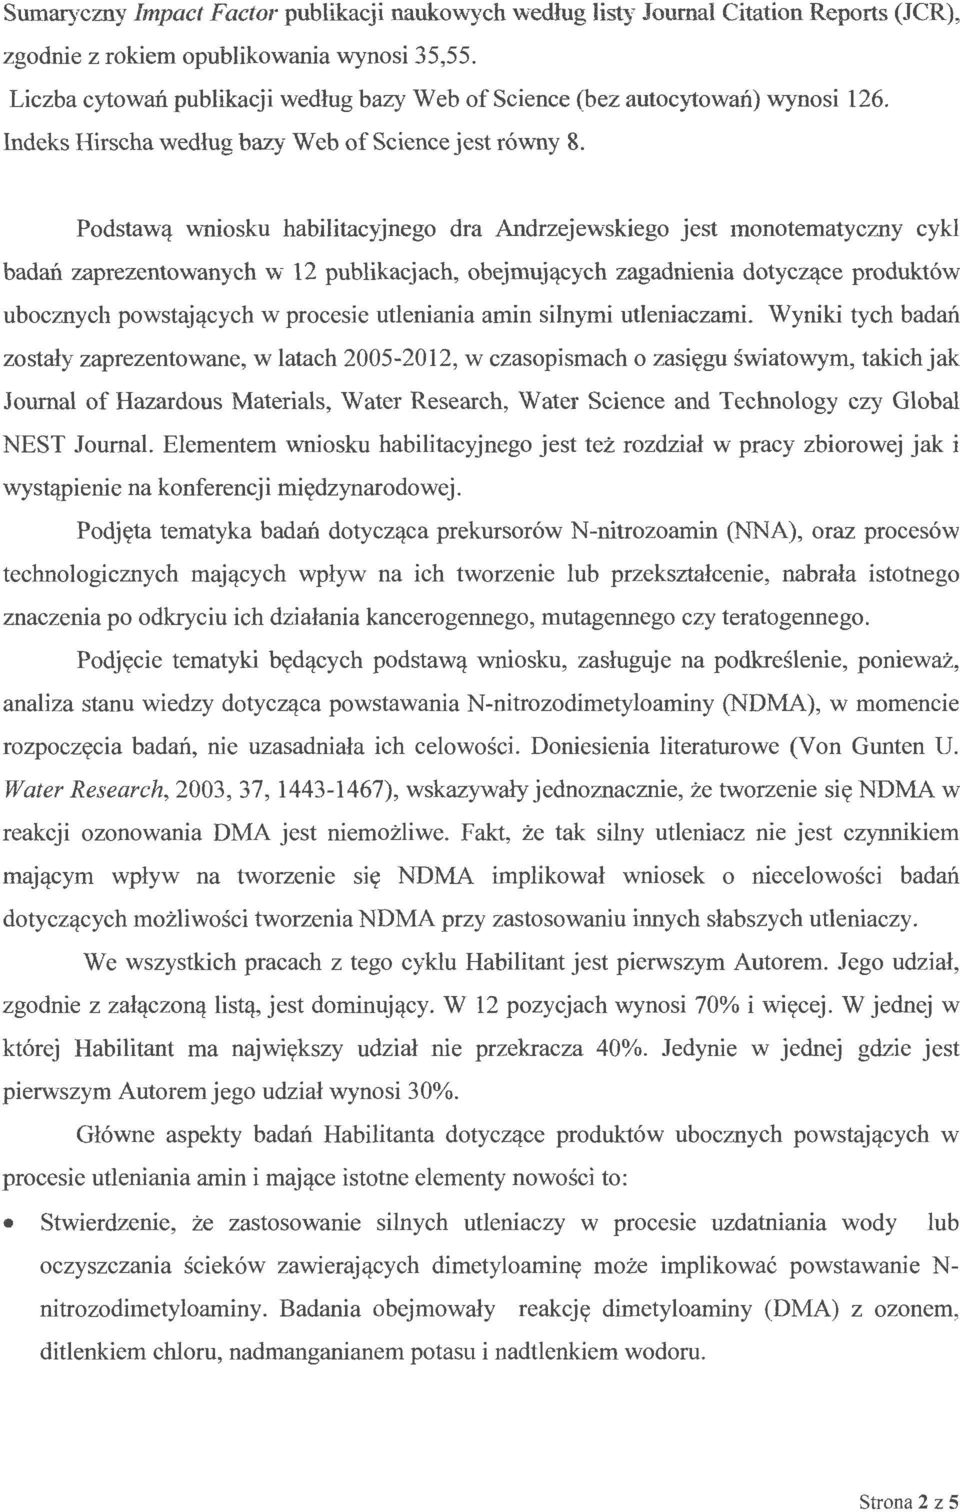 Podstawą wniosku habilitacyjnego dra Andrzejewskiego jest monotematyczny cykl badań zaprezentowanych w 12 publikacjach, obejmujących zagadnienia dotyczące produktów ubocznych powstających w procesie